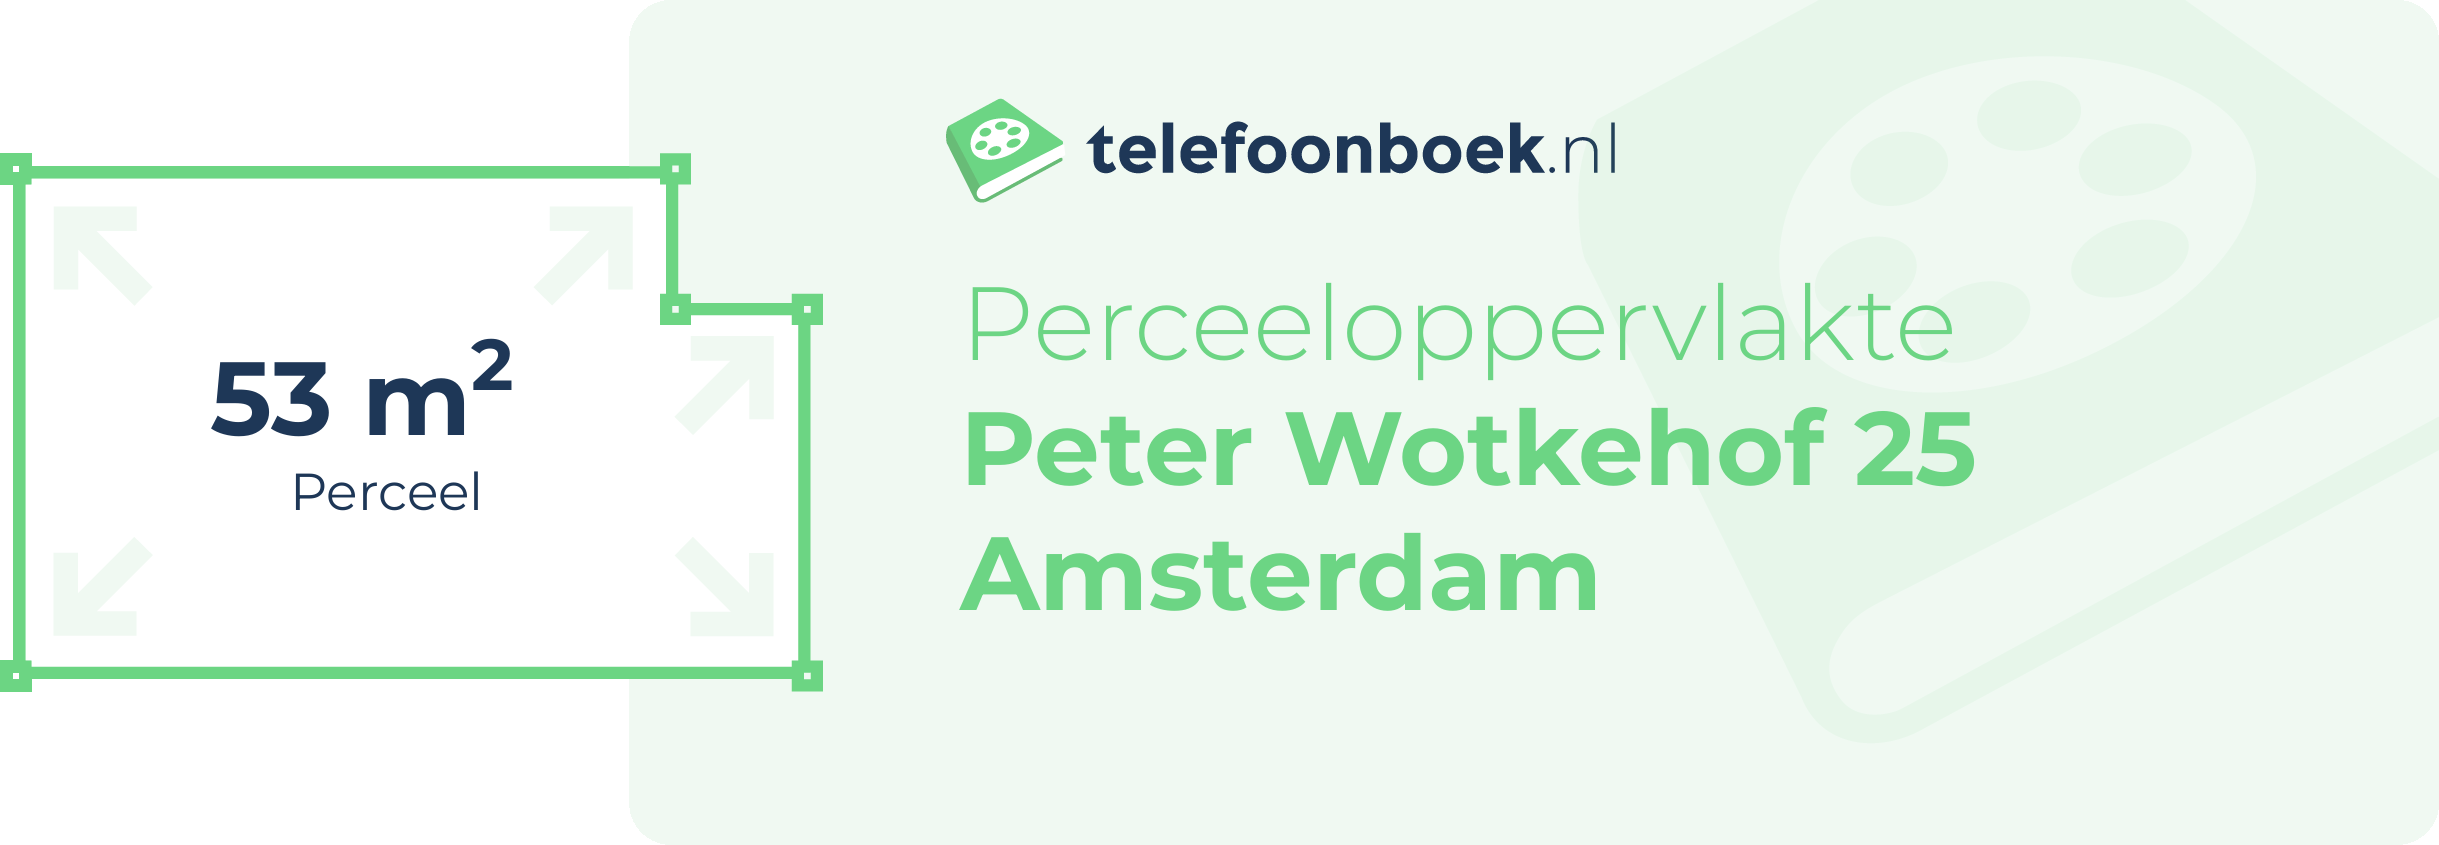 Perceeloppervlakte Peter Wotkehof 25 Amsterdam